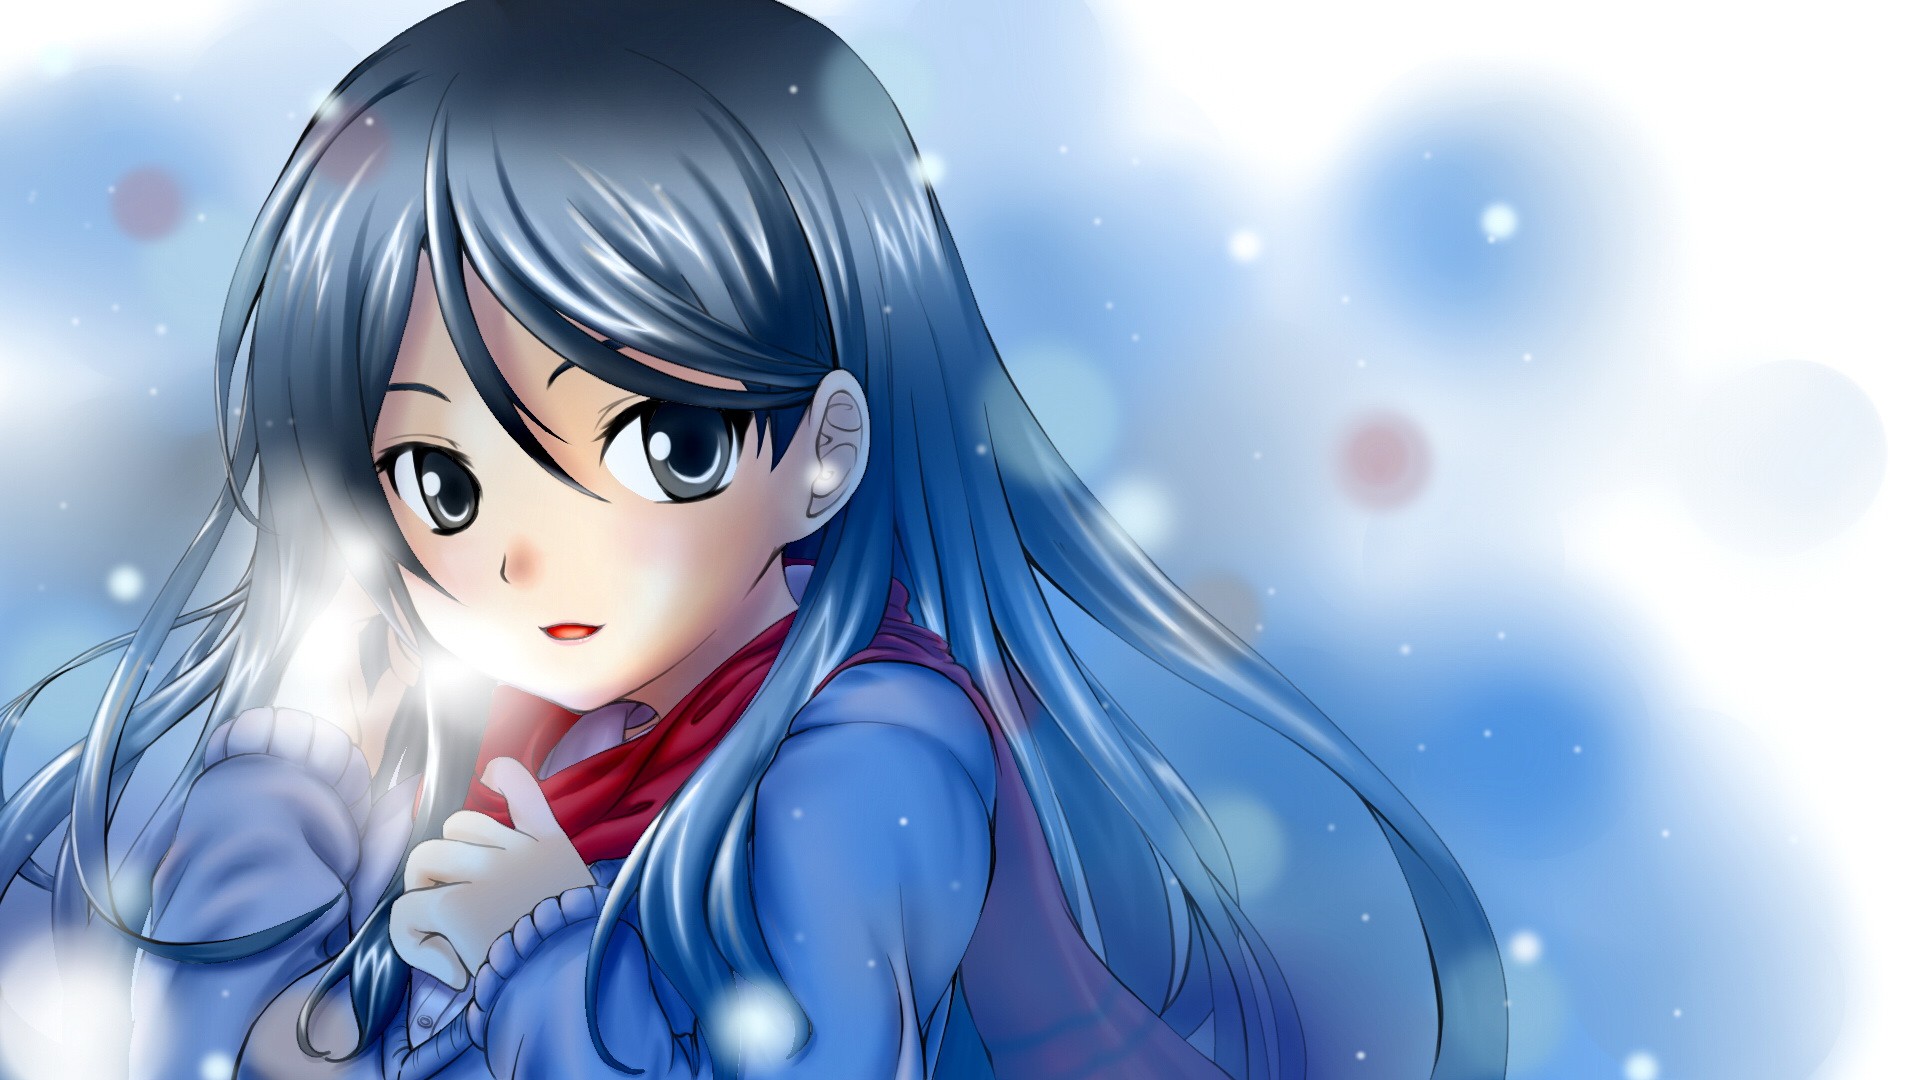 Nếu bạn muốn khám phá vẻ đẹp của mùa đông, hãy xem hình ảnh Winter Anime Girl với đôi mắt lạnh lùng. Bức tranh này thể hiện sự sáng tạo và tính cách của cô gái trong khung cảnh mùa đông tuyết trắng.